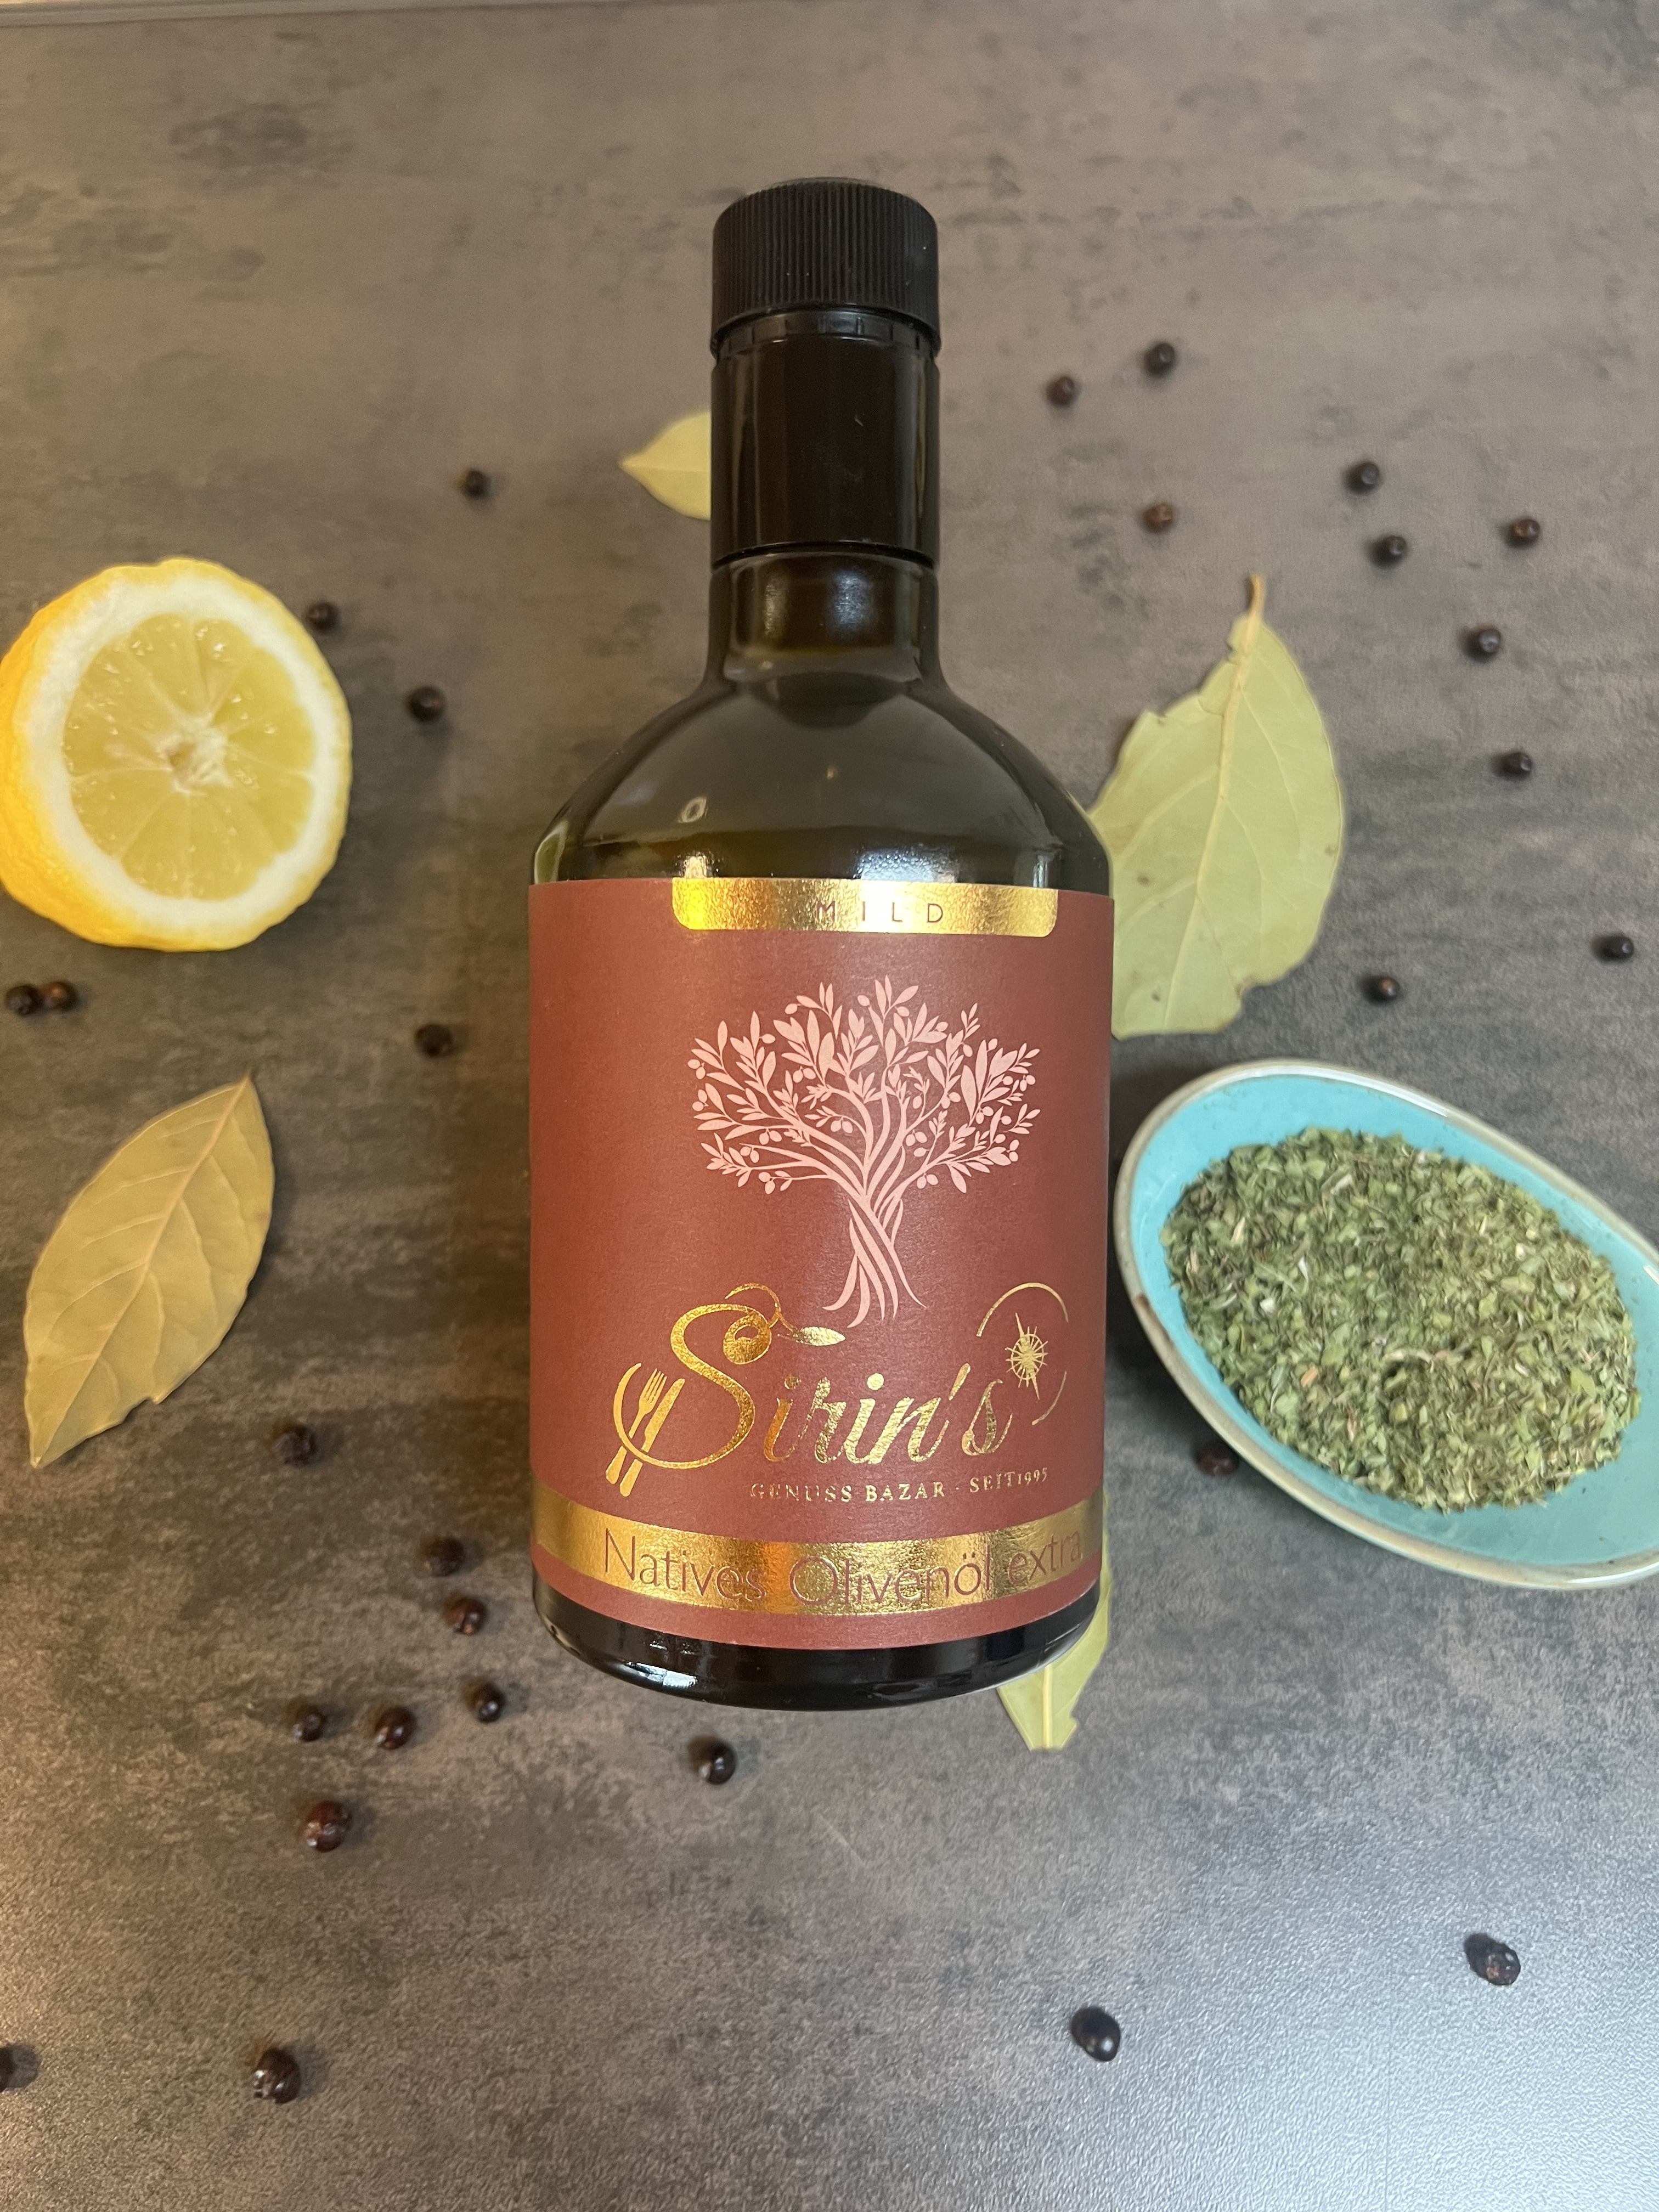 Olivenöl Sirins mild (0,2% Säuregehalt) aus Kreta